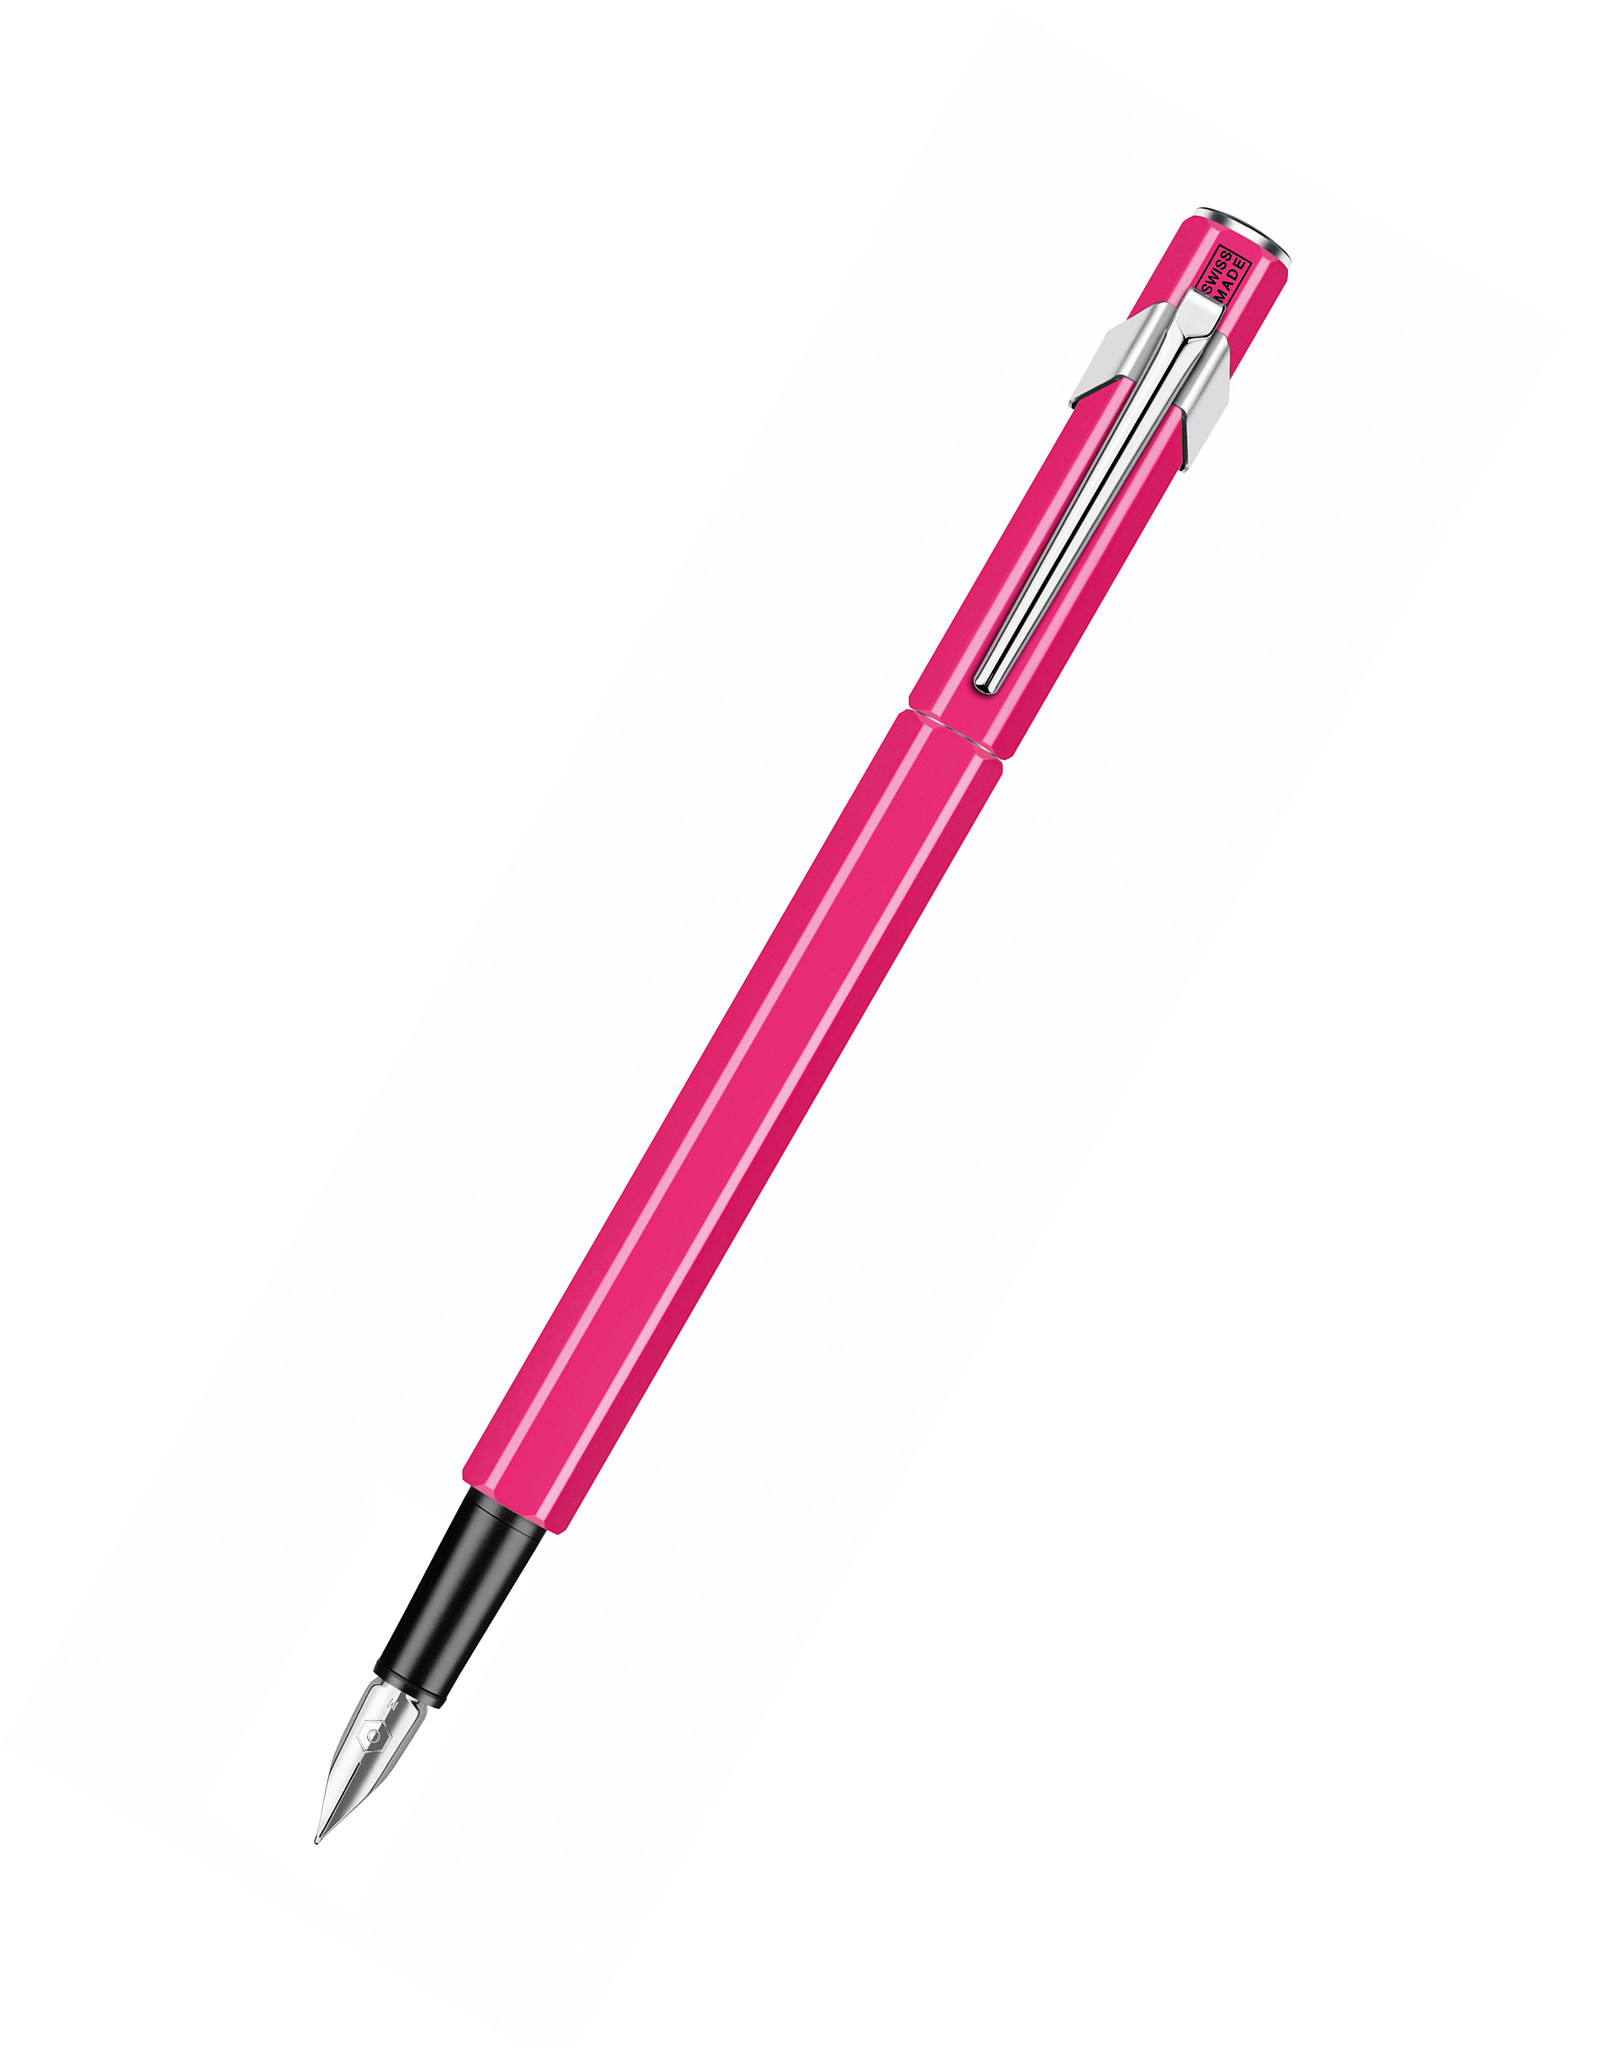 Caran d'Ache Caran D’Ache 849 Fountain Pen, Fluorescent Pink (M)